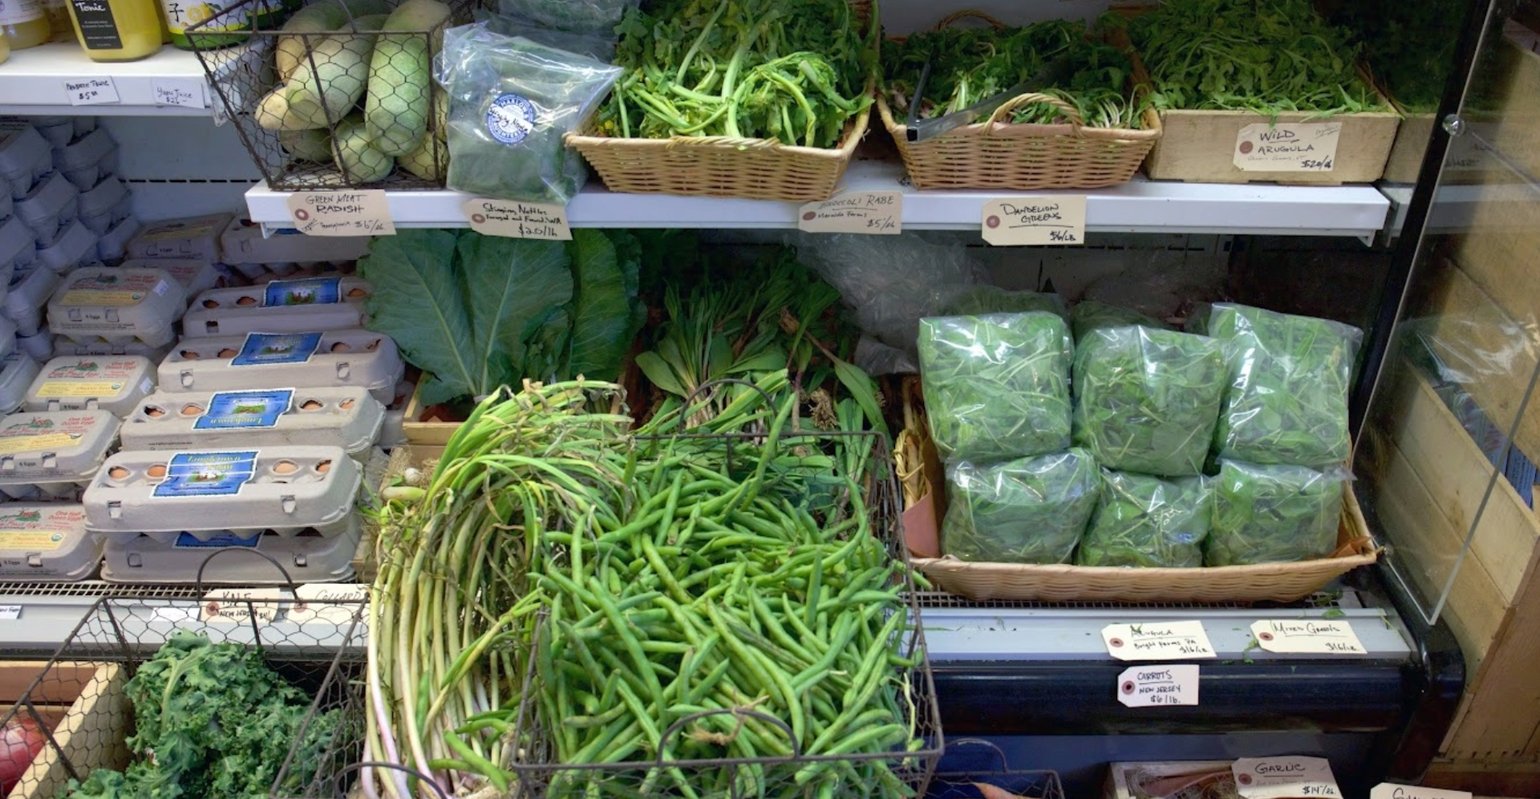 produce fridge full of green vegetables